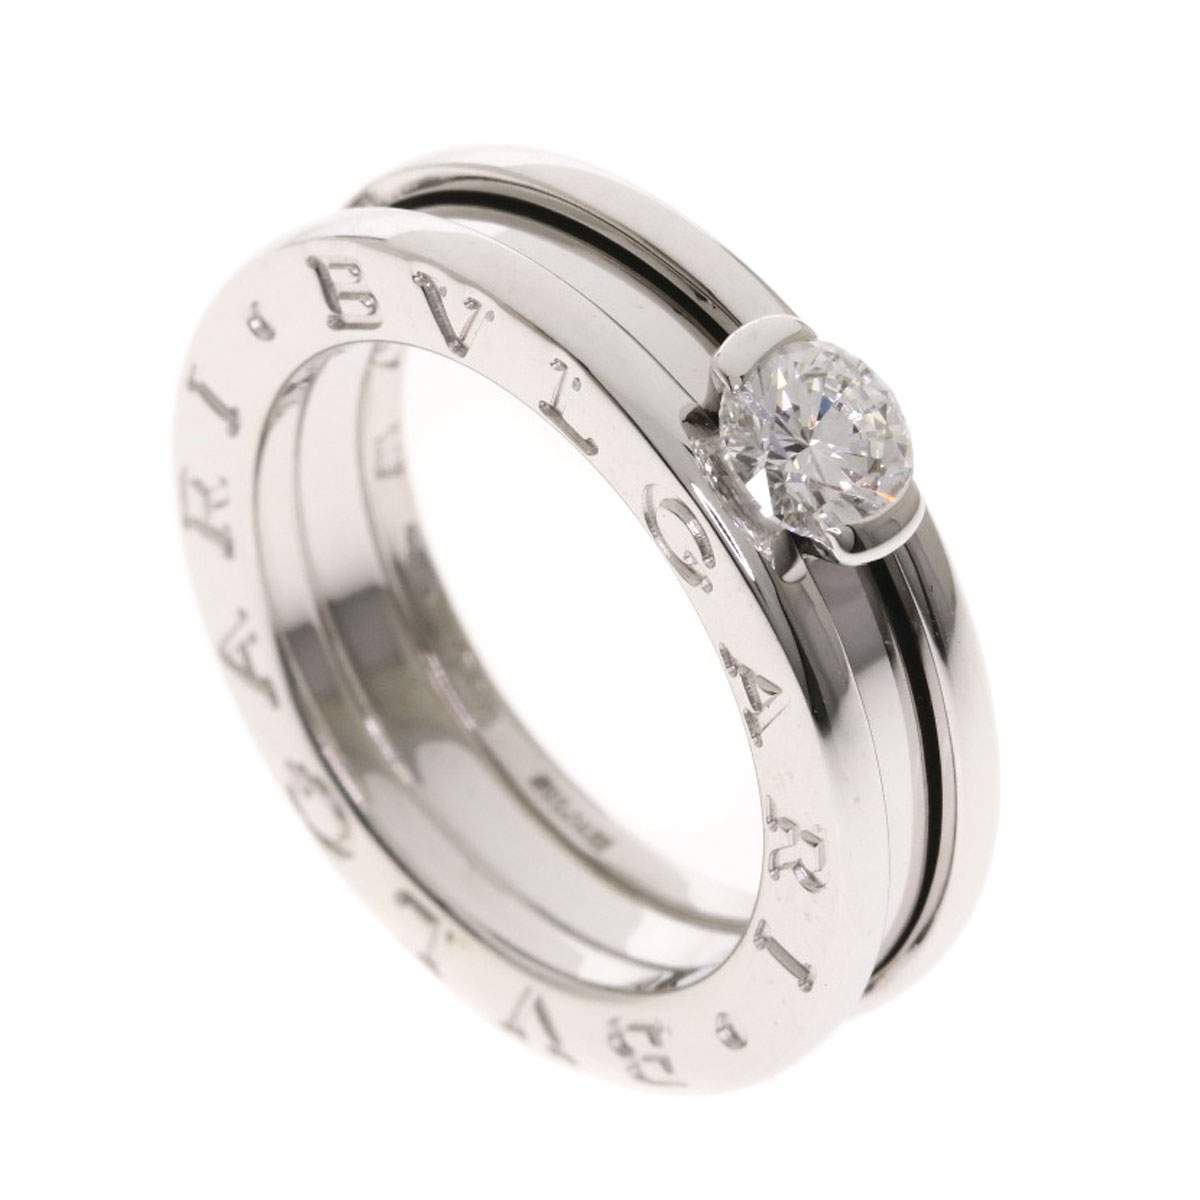 bvlgari engagement ring prices